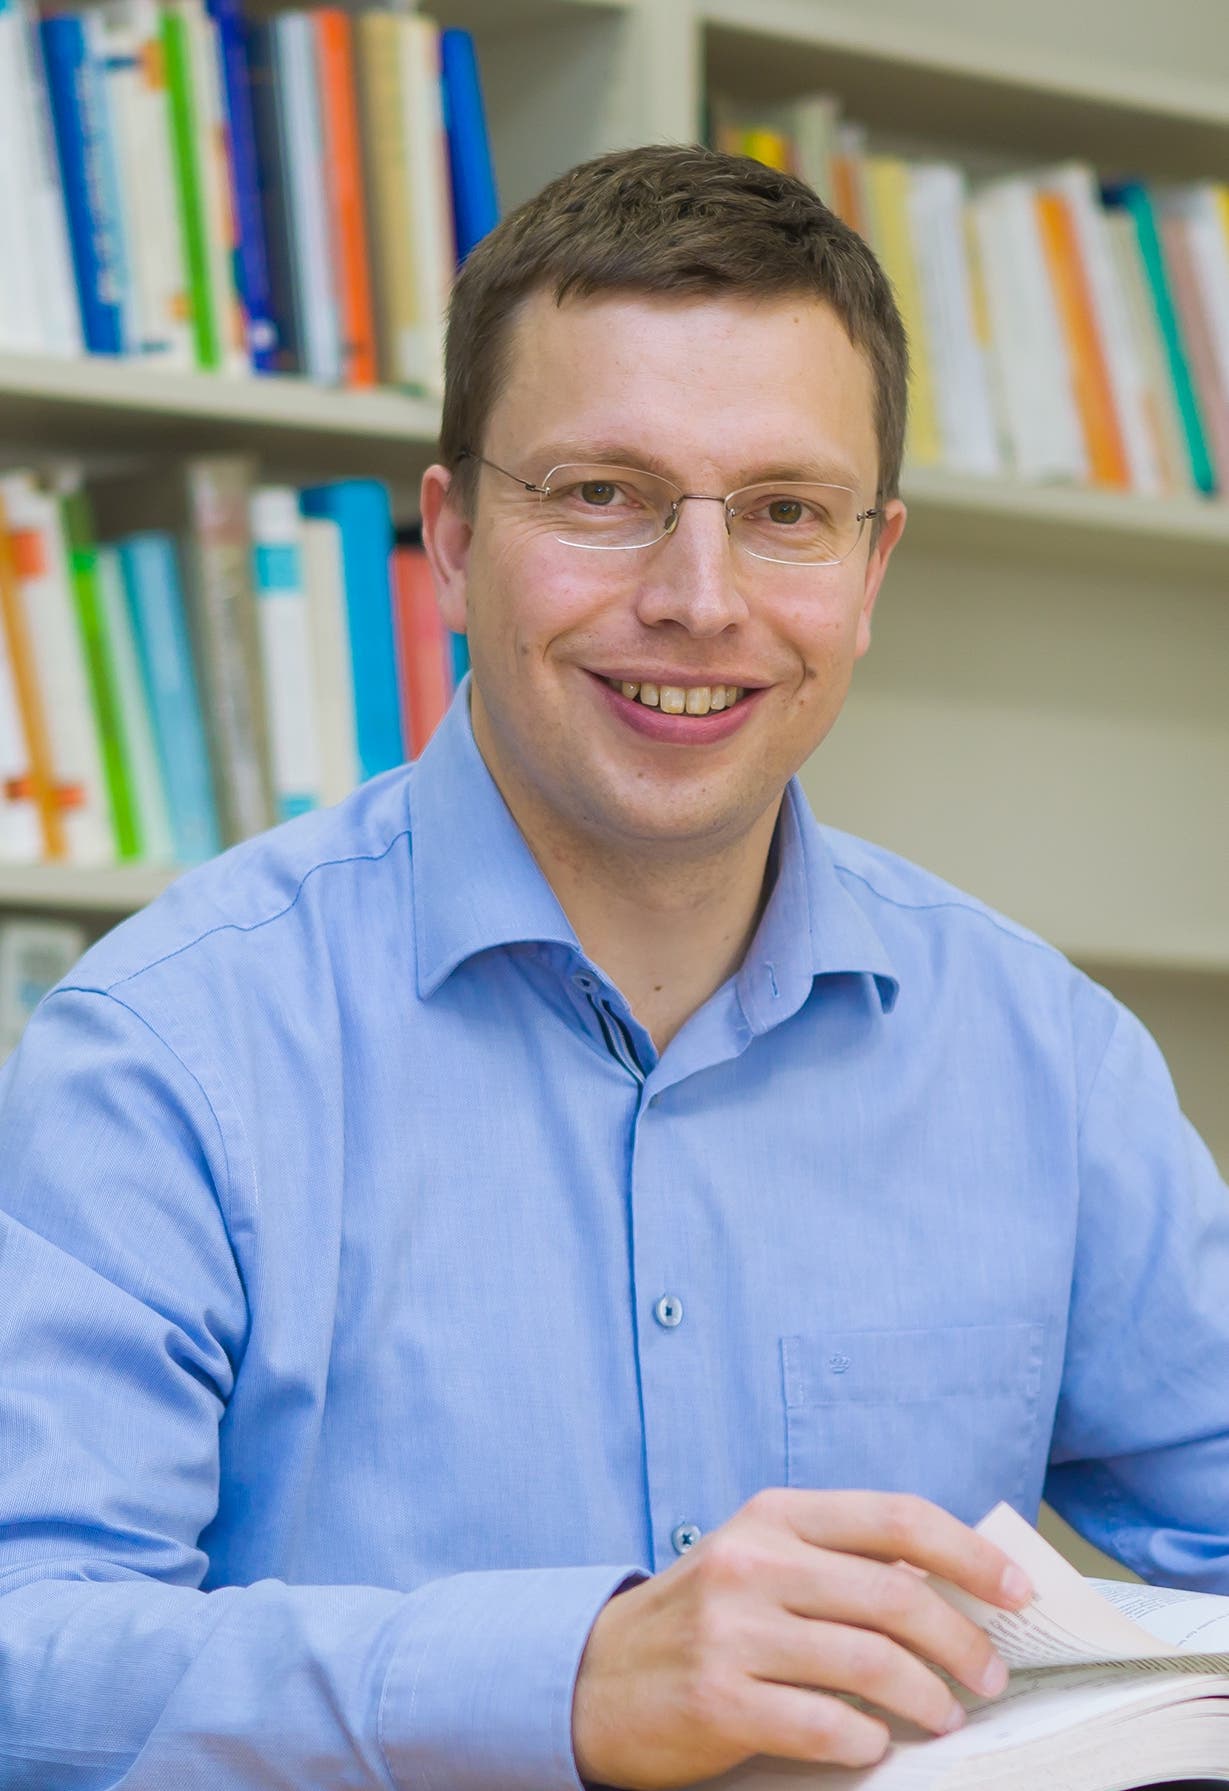 Hannes Zacher (Jahrgang 1979), Professor für Arbeits- und Organisationspsychologie an der Universität Leipzig